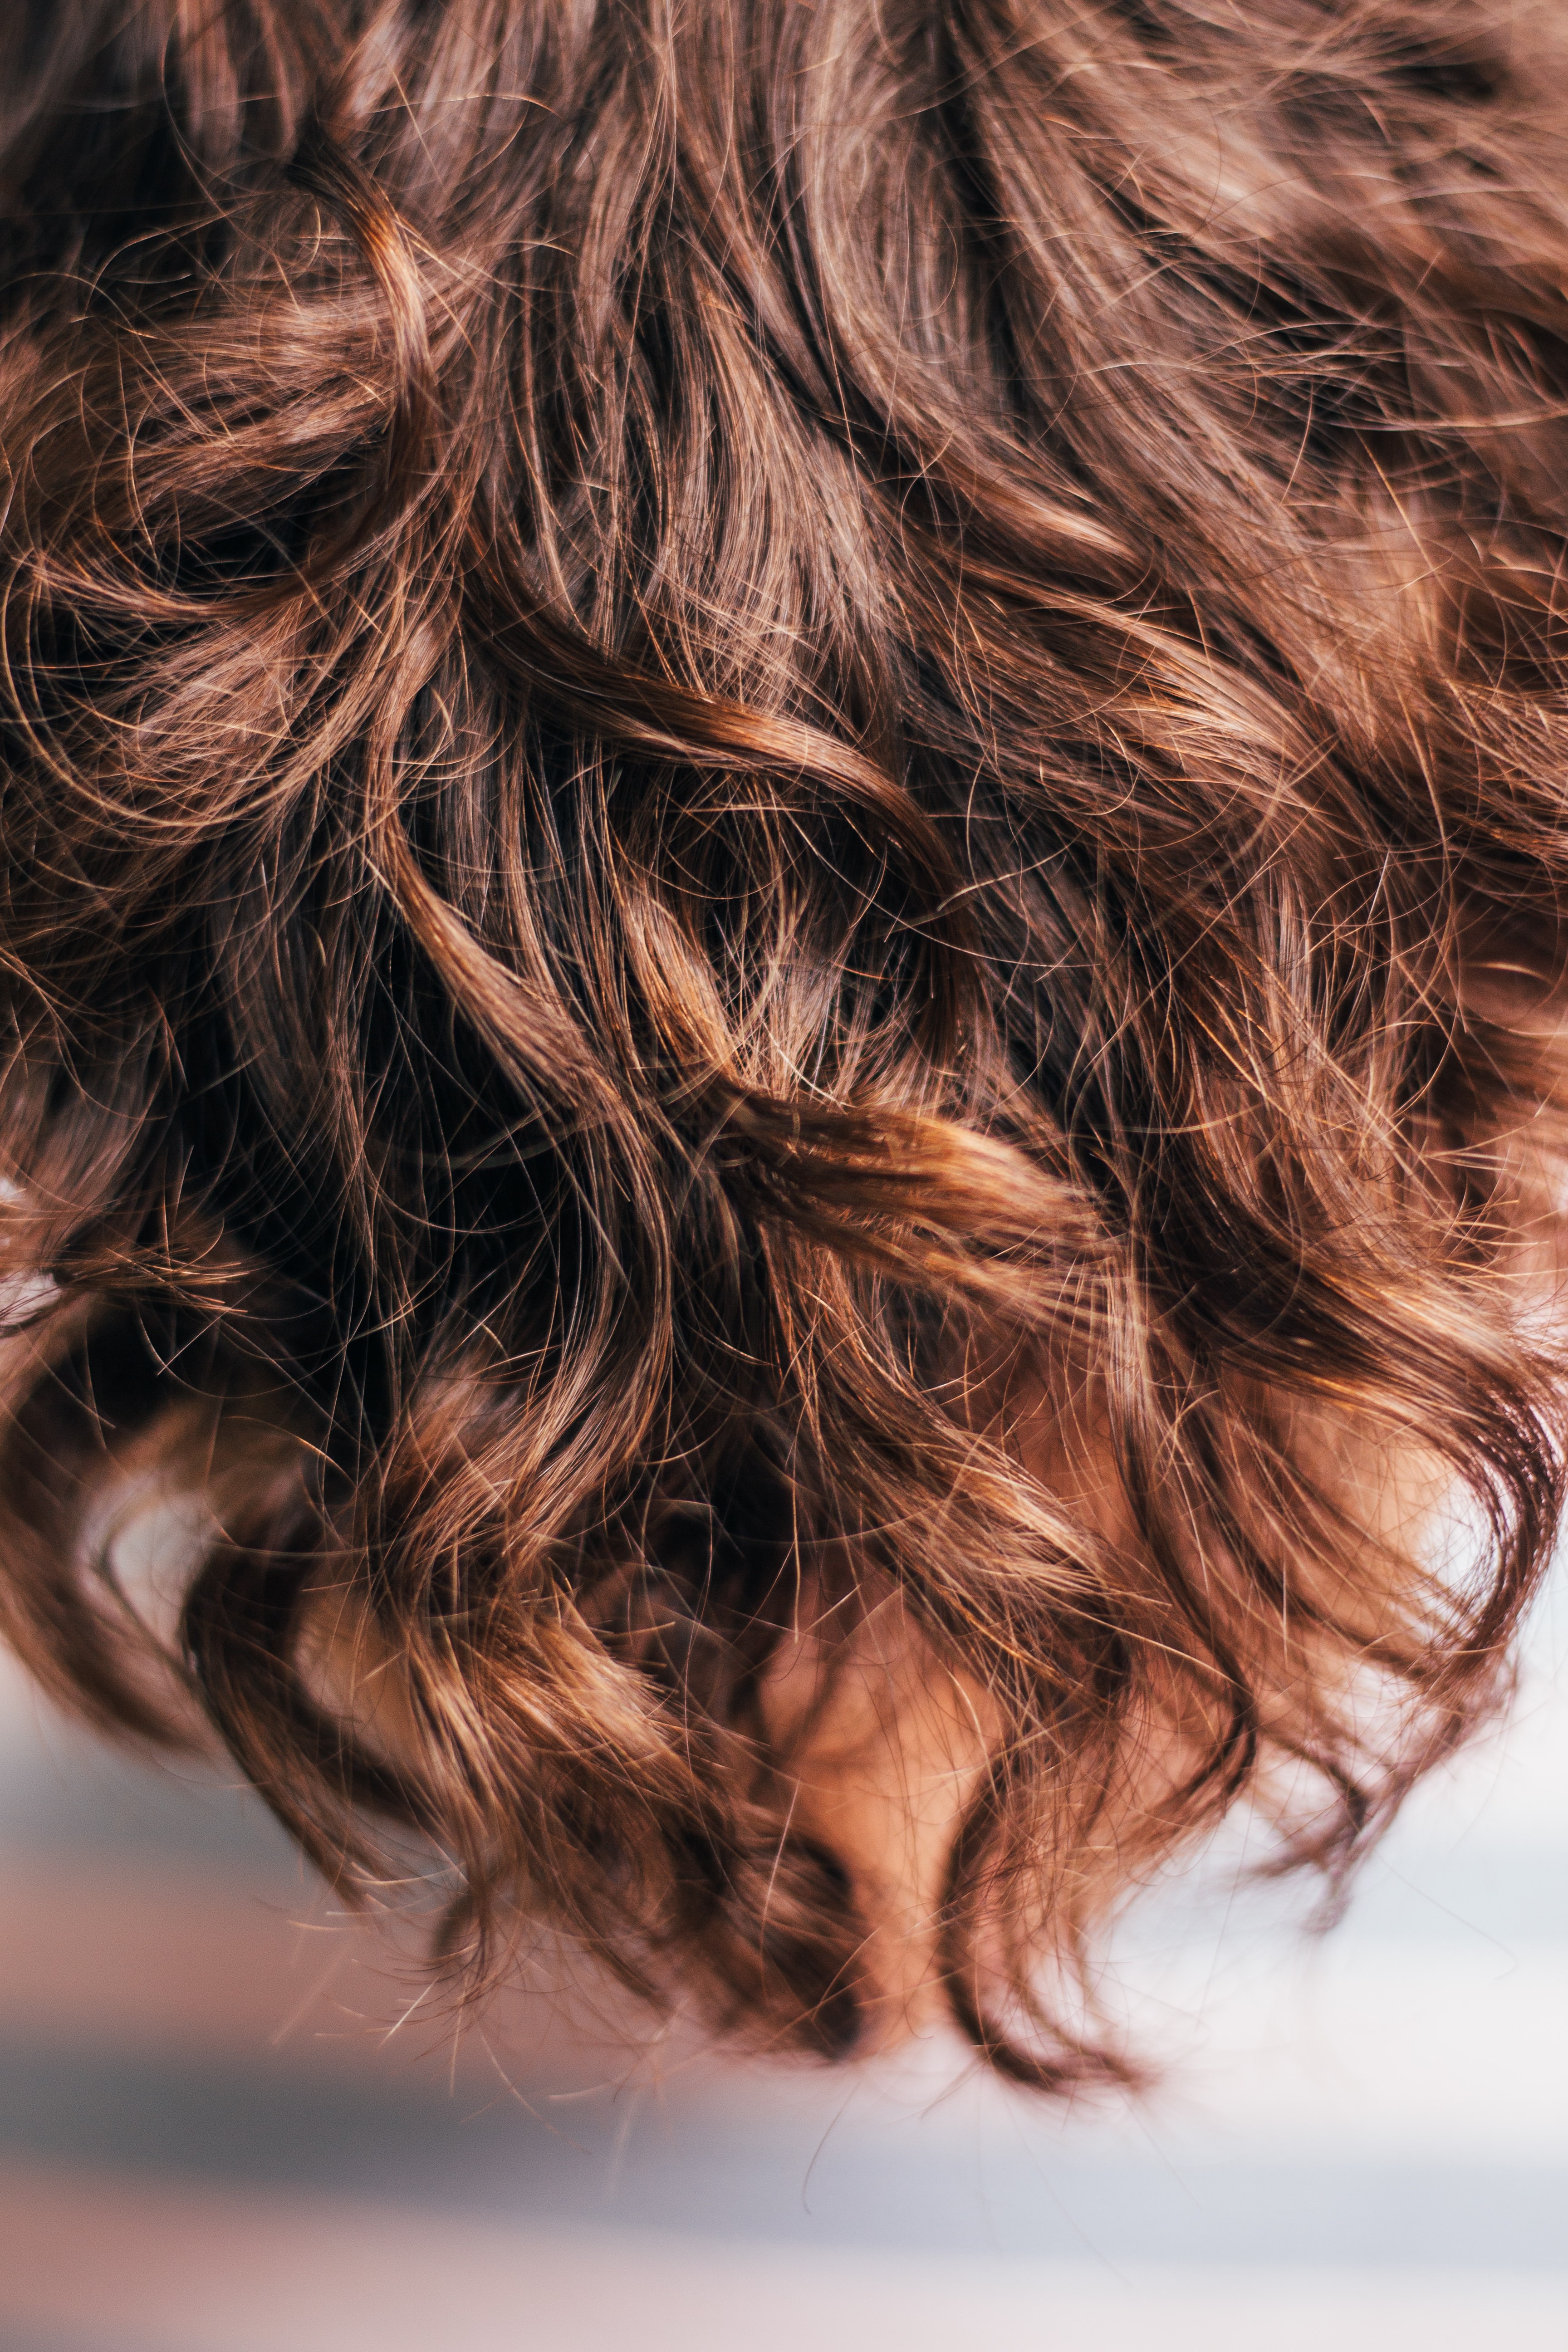 Clip-in vlasy: Záchrana špatného účesu i příliš řídkých vlasů